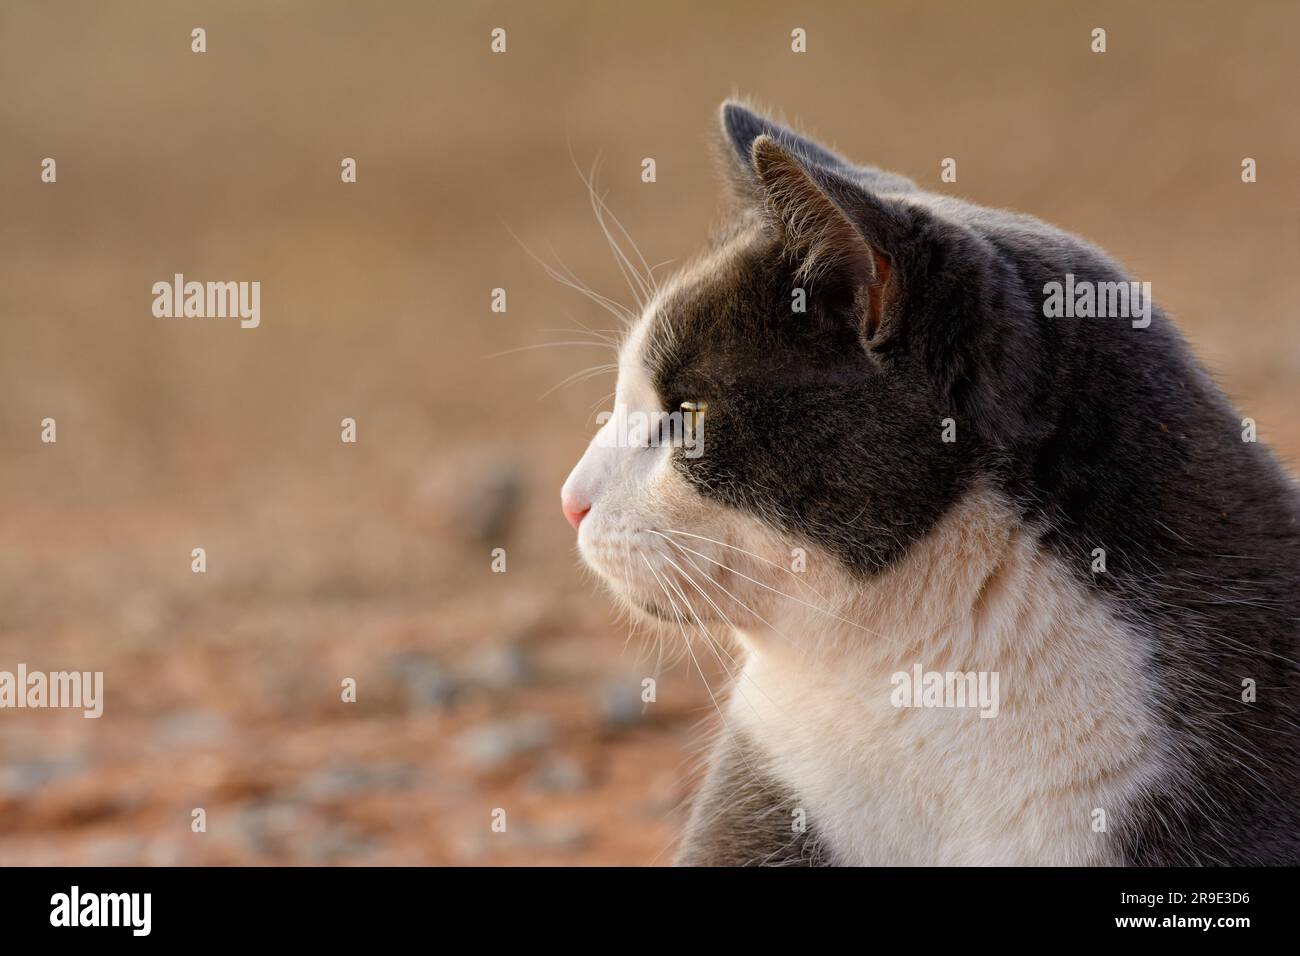 Profil d'un chat gris et blanc regardant vers la gauche, sur fond beige discret, avec espace de copie Banque D'Images